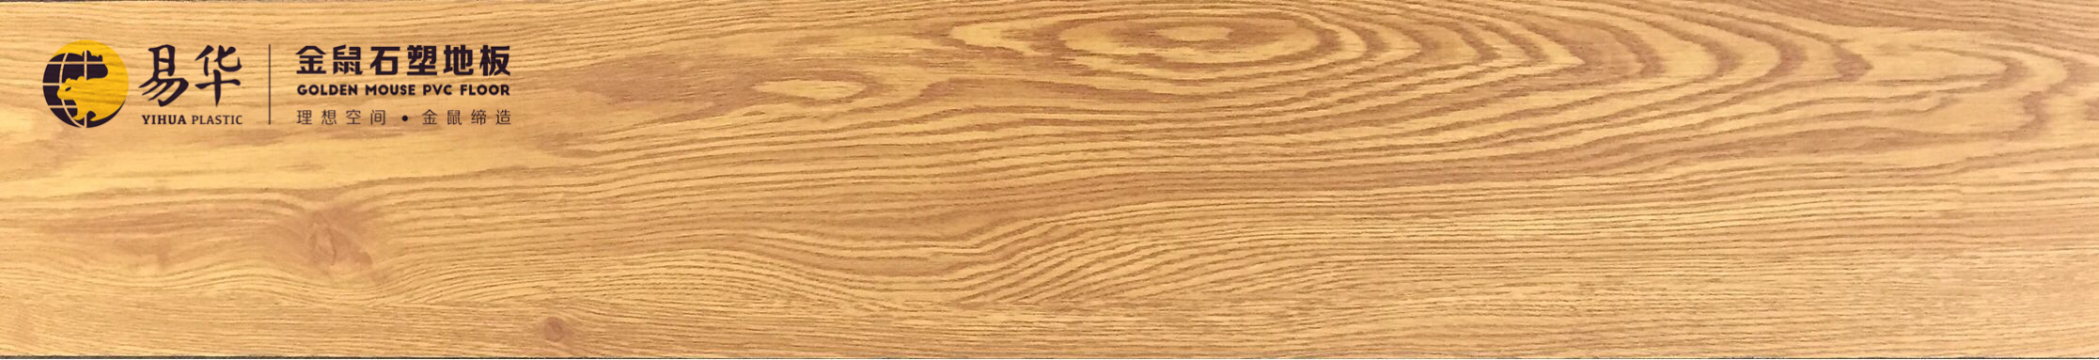 金鼠PVC地板木纹WM01